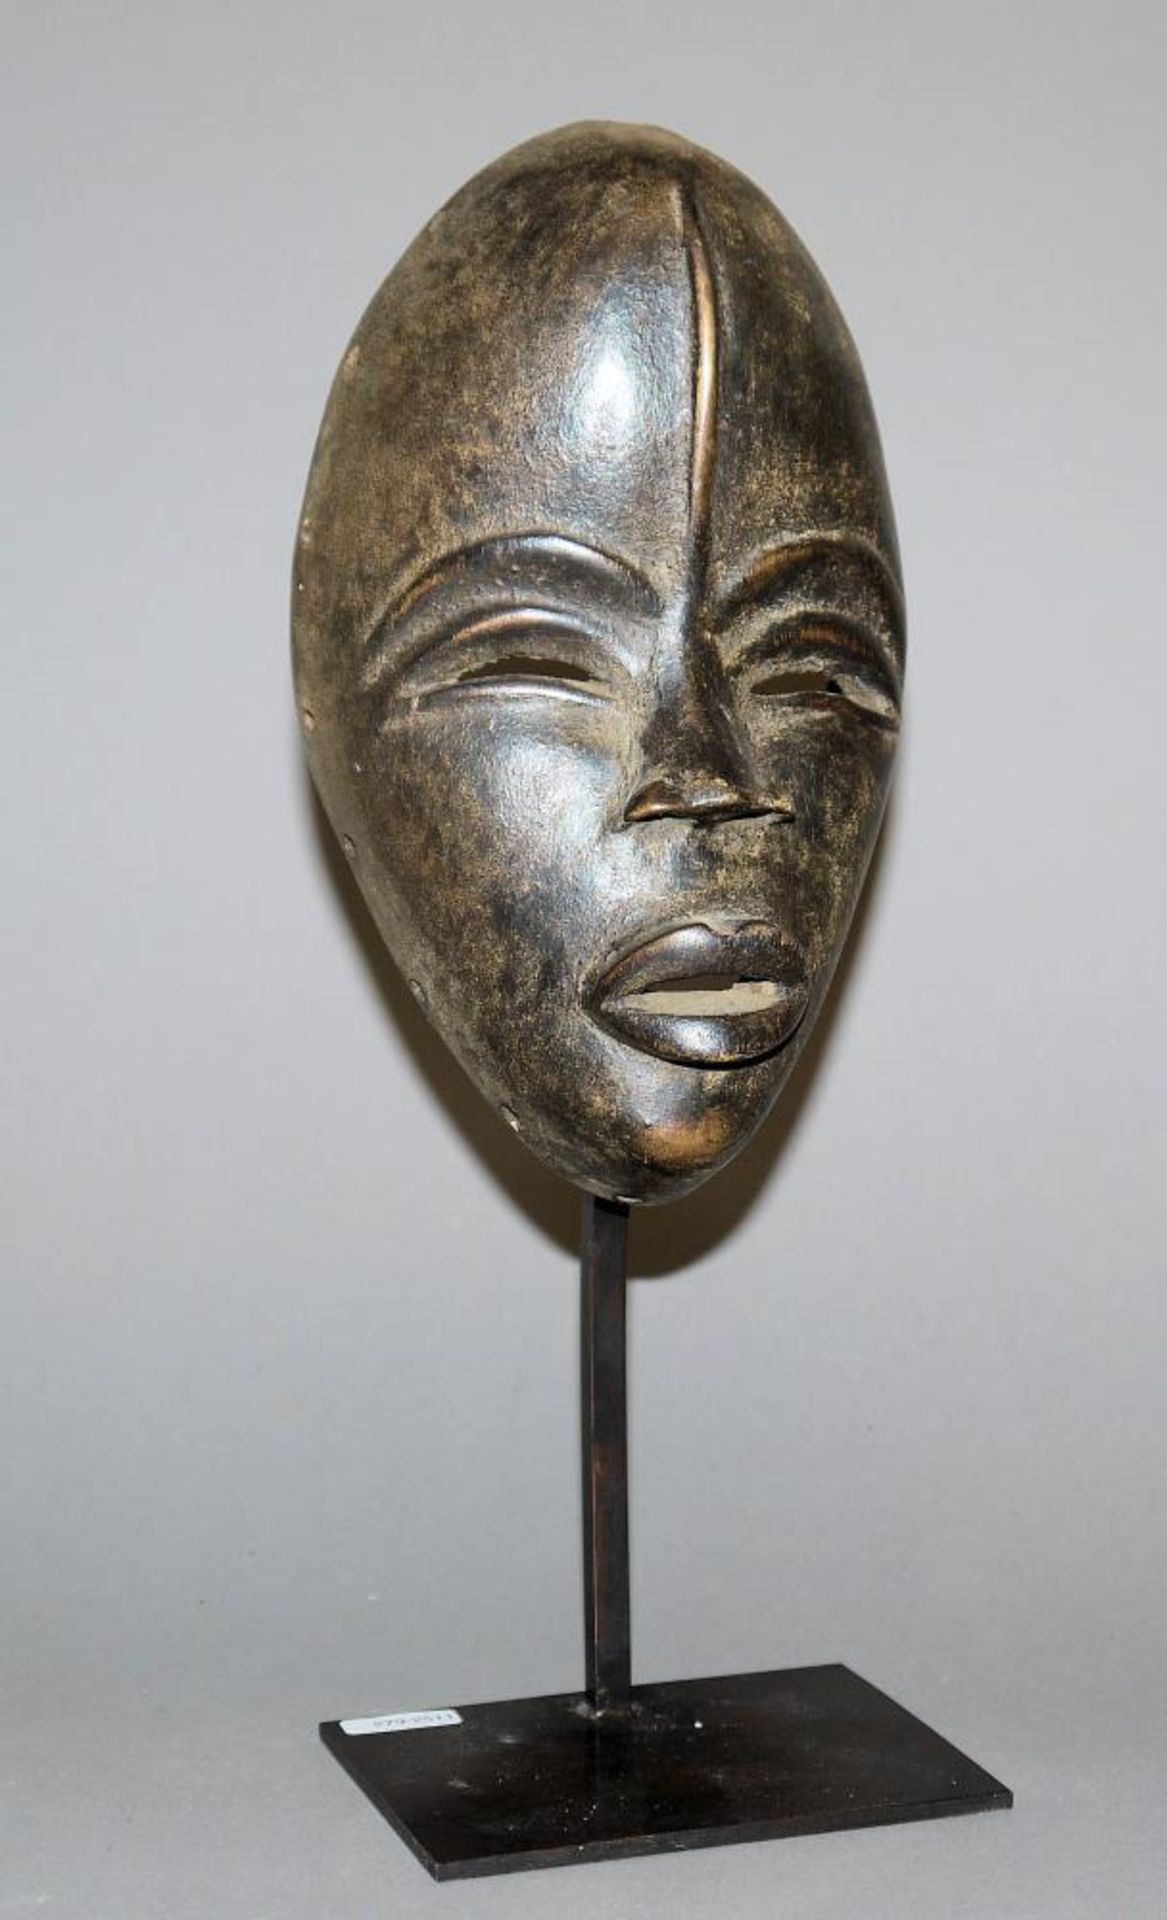 Maske der Dan, Liberia/Elfenbeinküste Maske mit geschlitzten Augen, prominenter Lippenpartie und